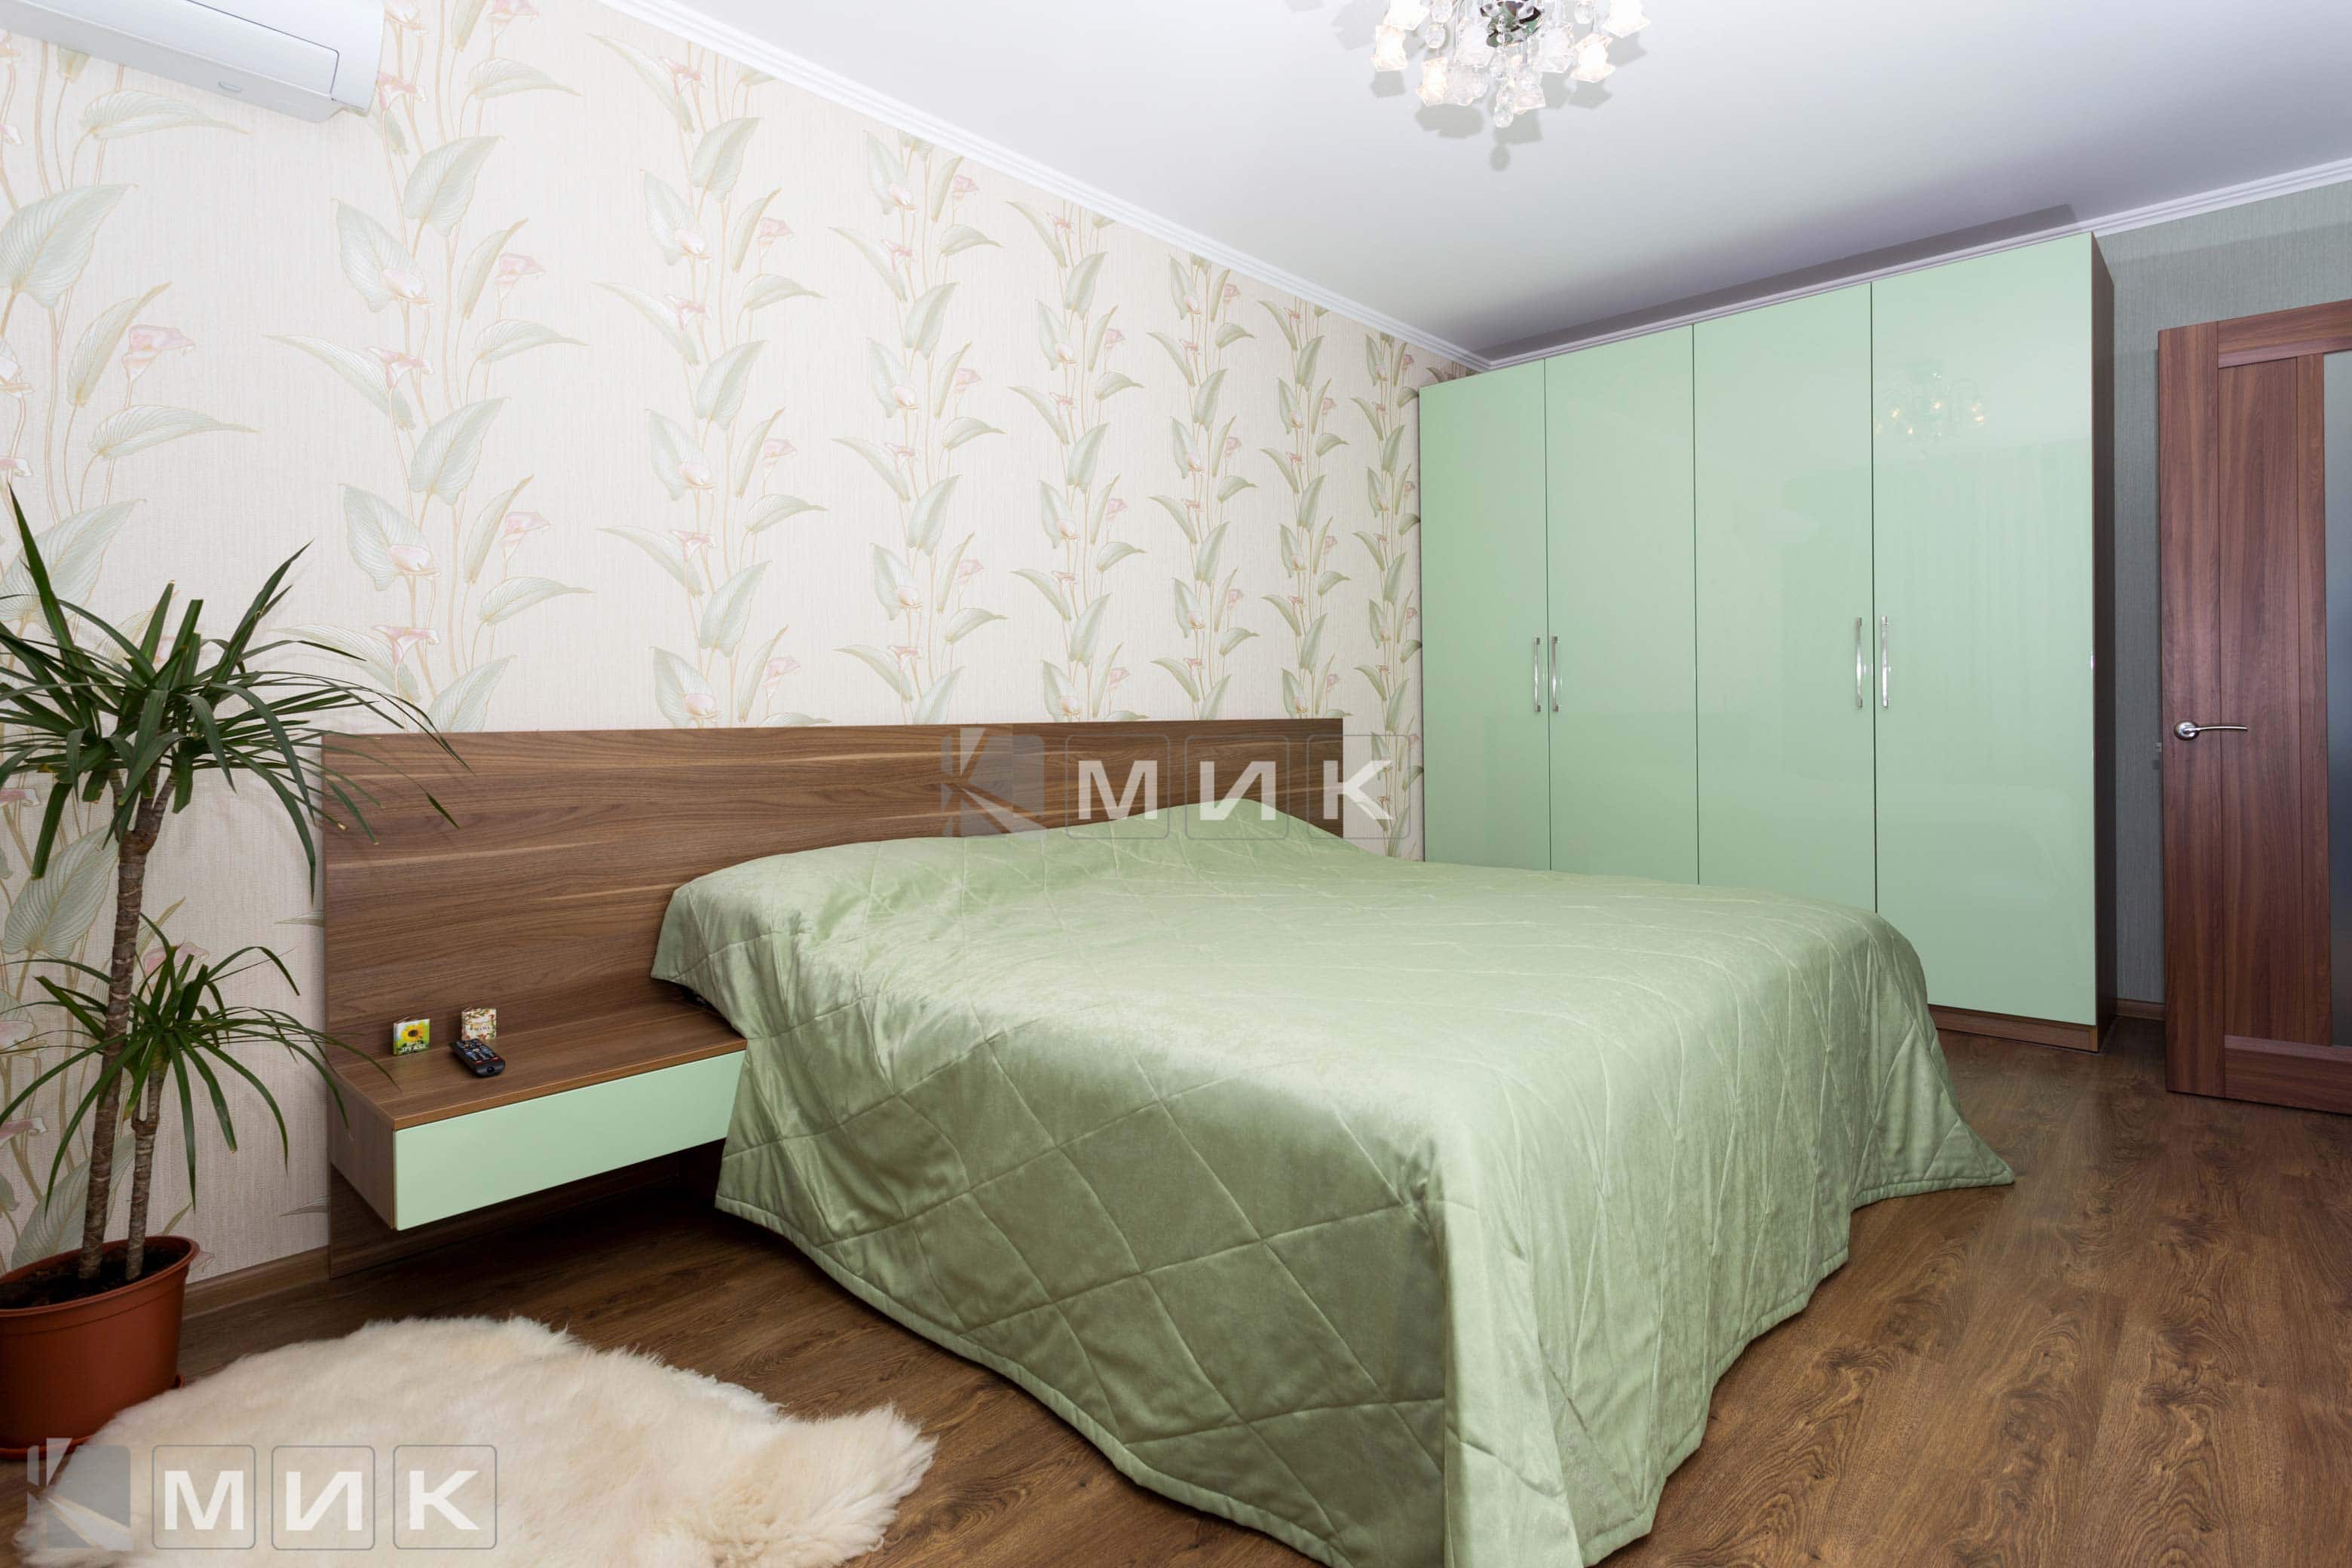 Кровать и шкаф в спальню зеленого цвета